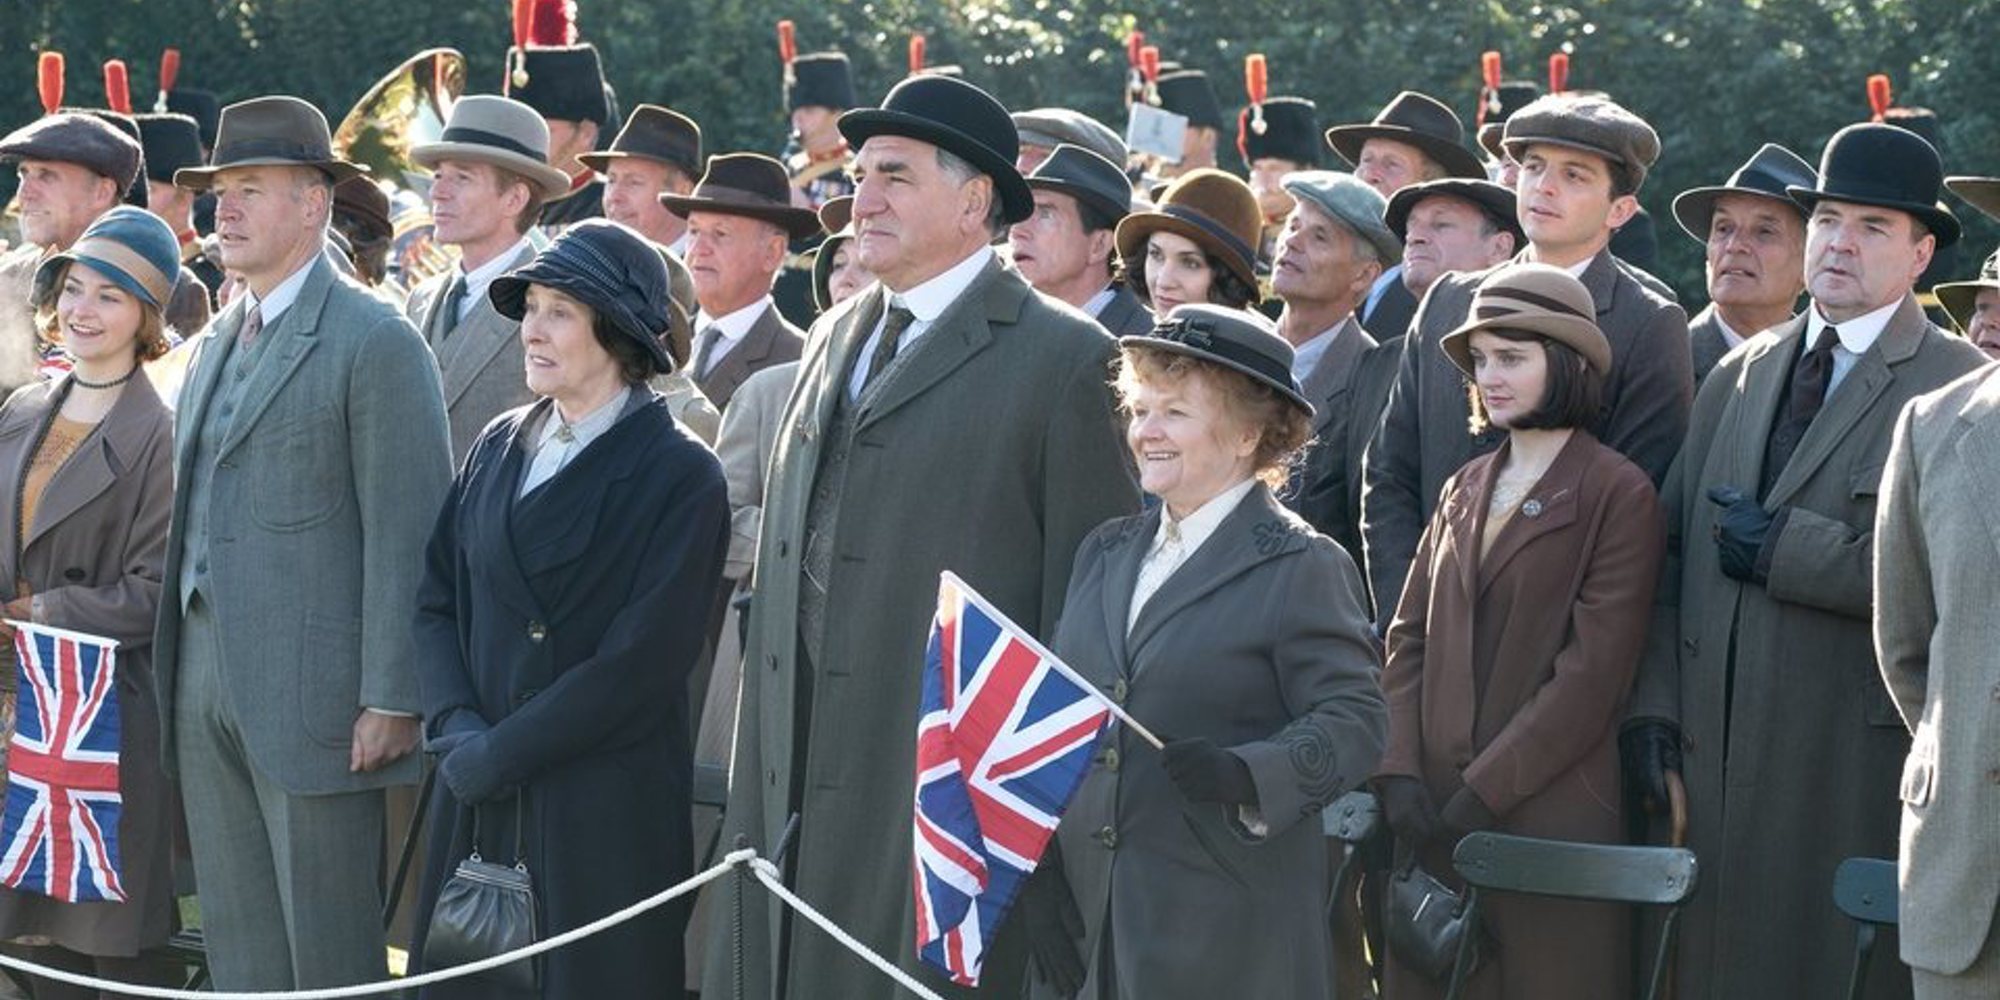 Clip exclusivo de 'Downton Abbey': La visita real que revolucionará a la familia Crawley